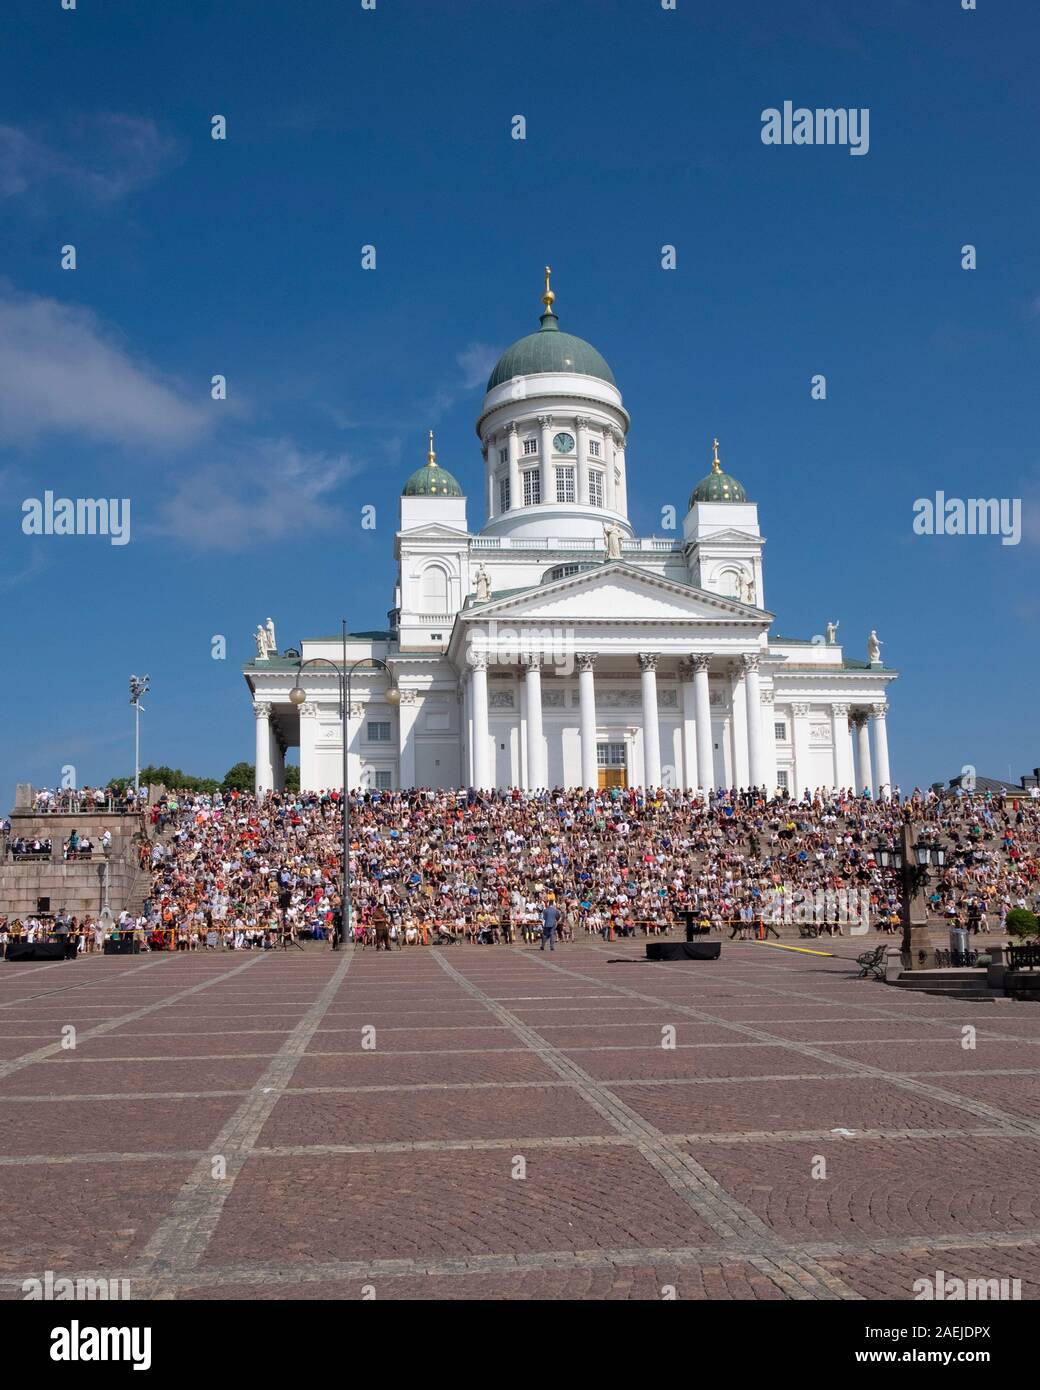 Vistas a la Plaza del Senado de gente sentada en los escalones de la Catedral de Helsinki, Helsinki, Finlandia, Escandinavia, Europa Foto de stock